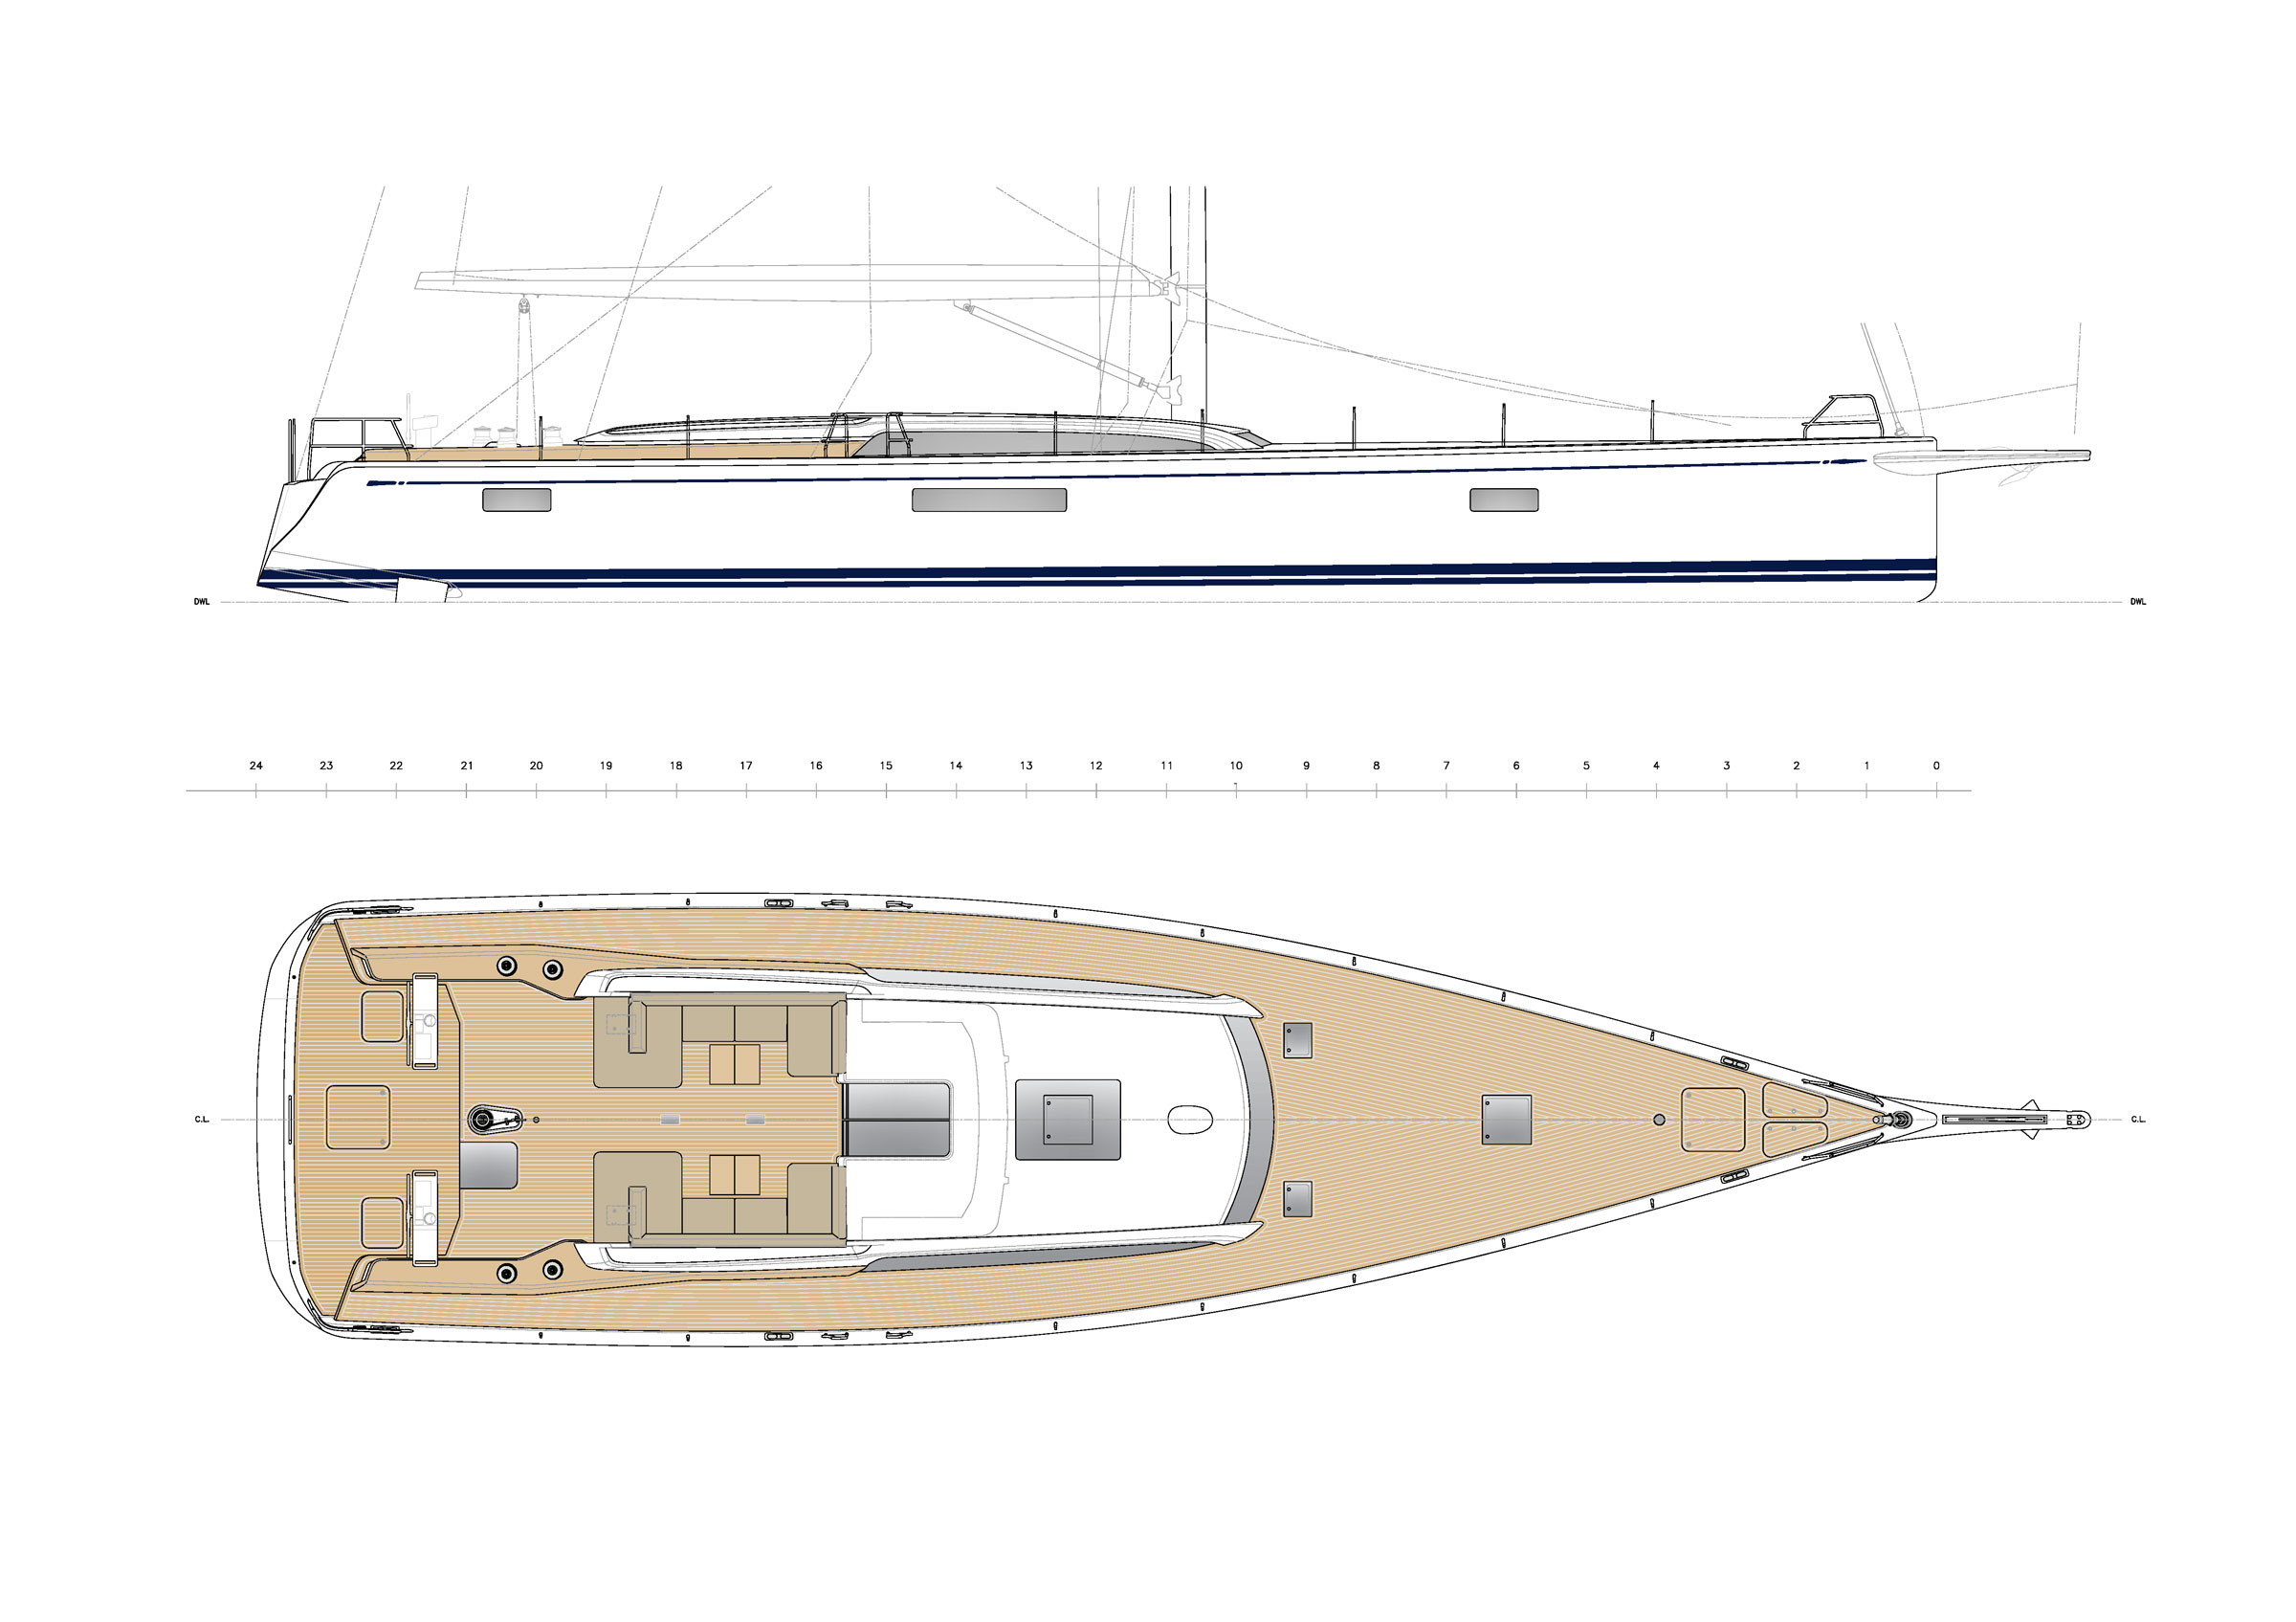 80 ft sailboat